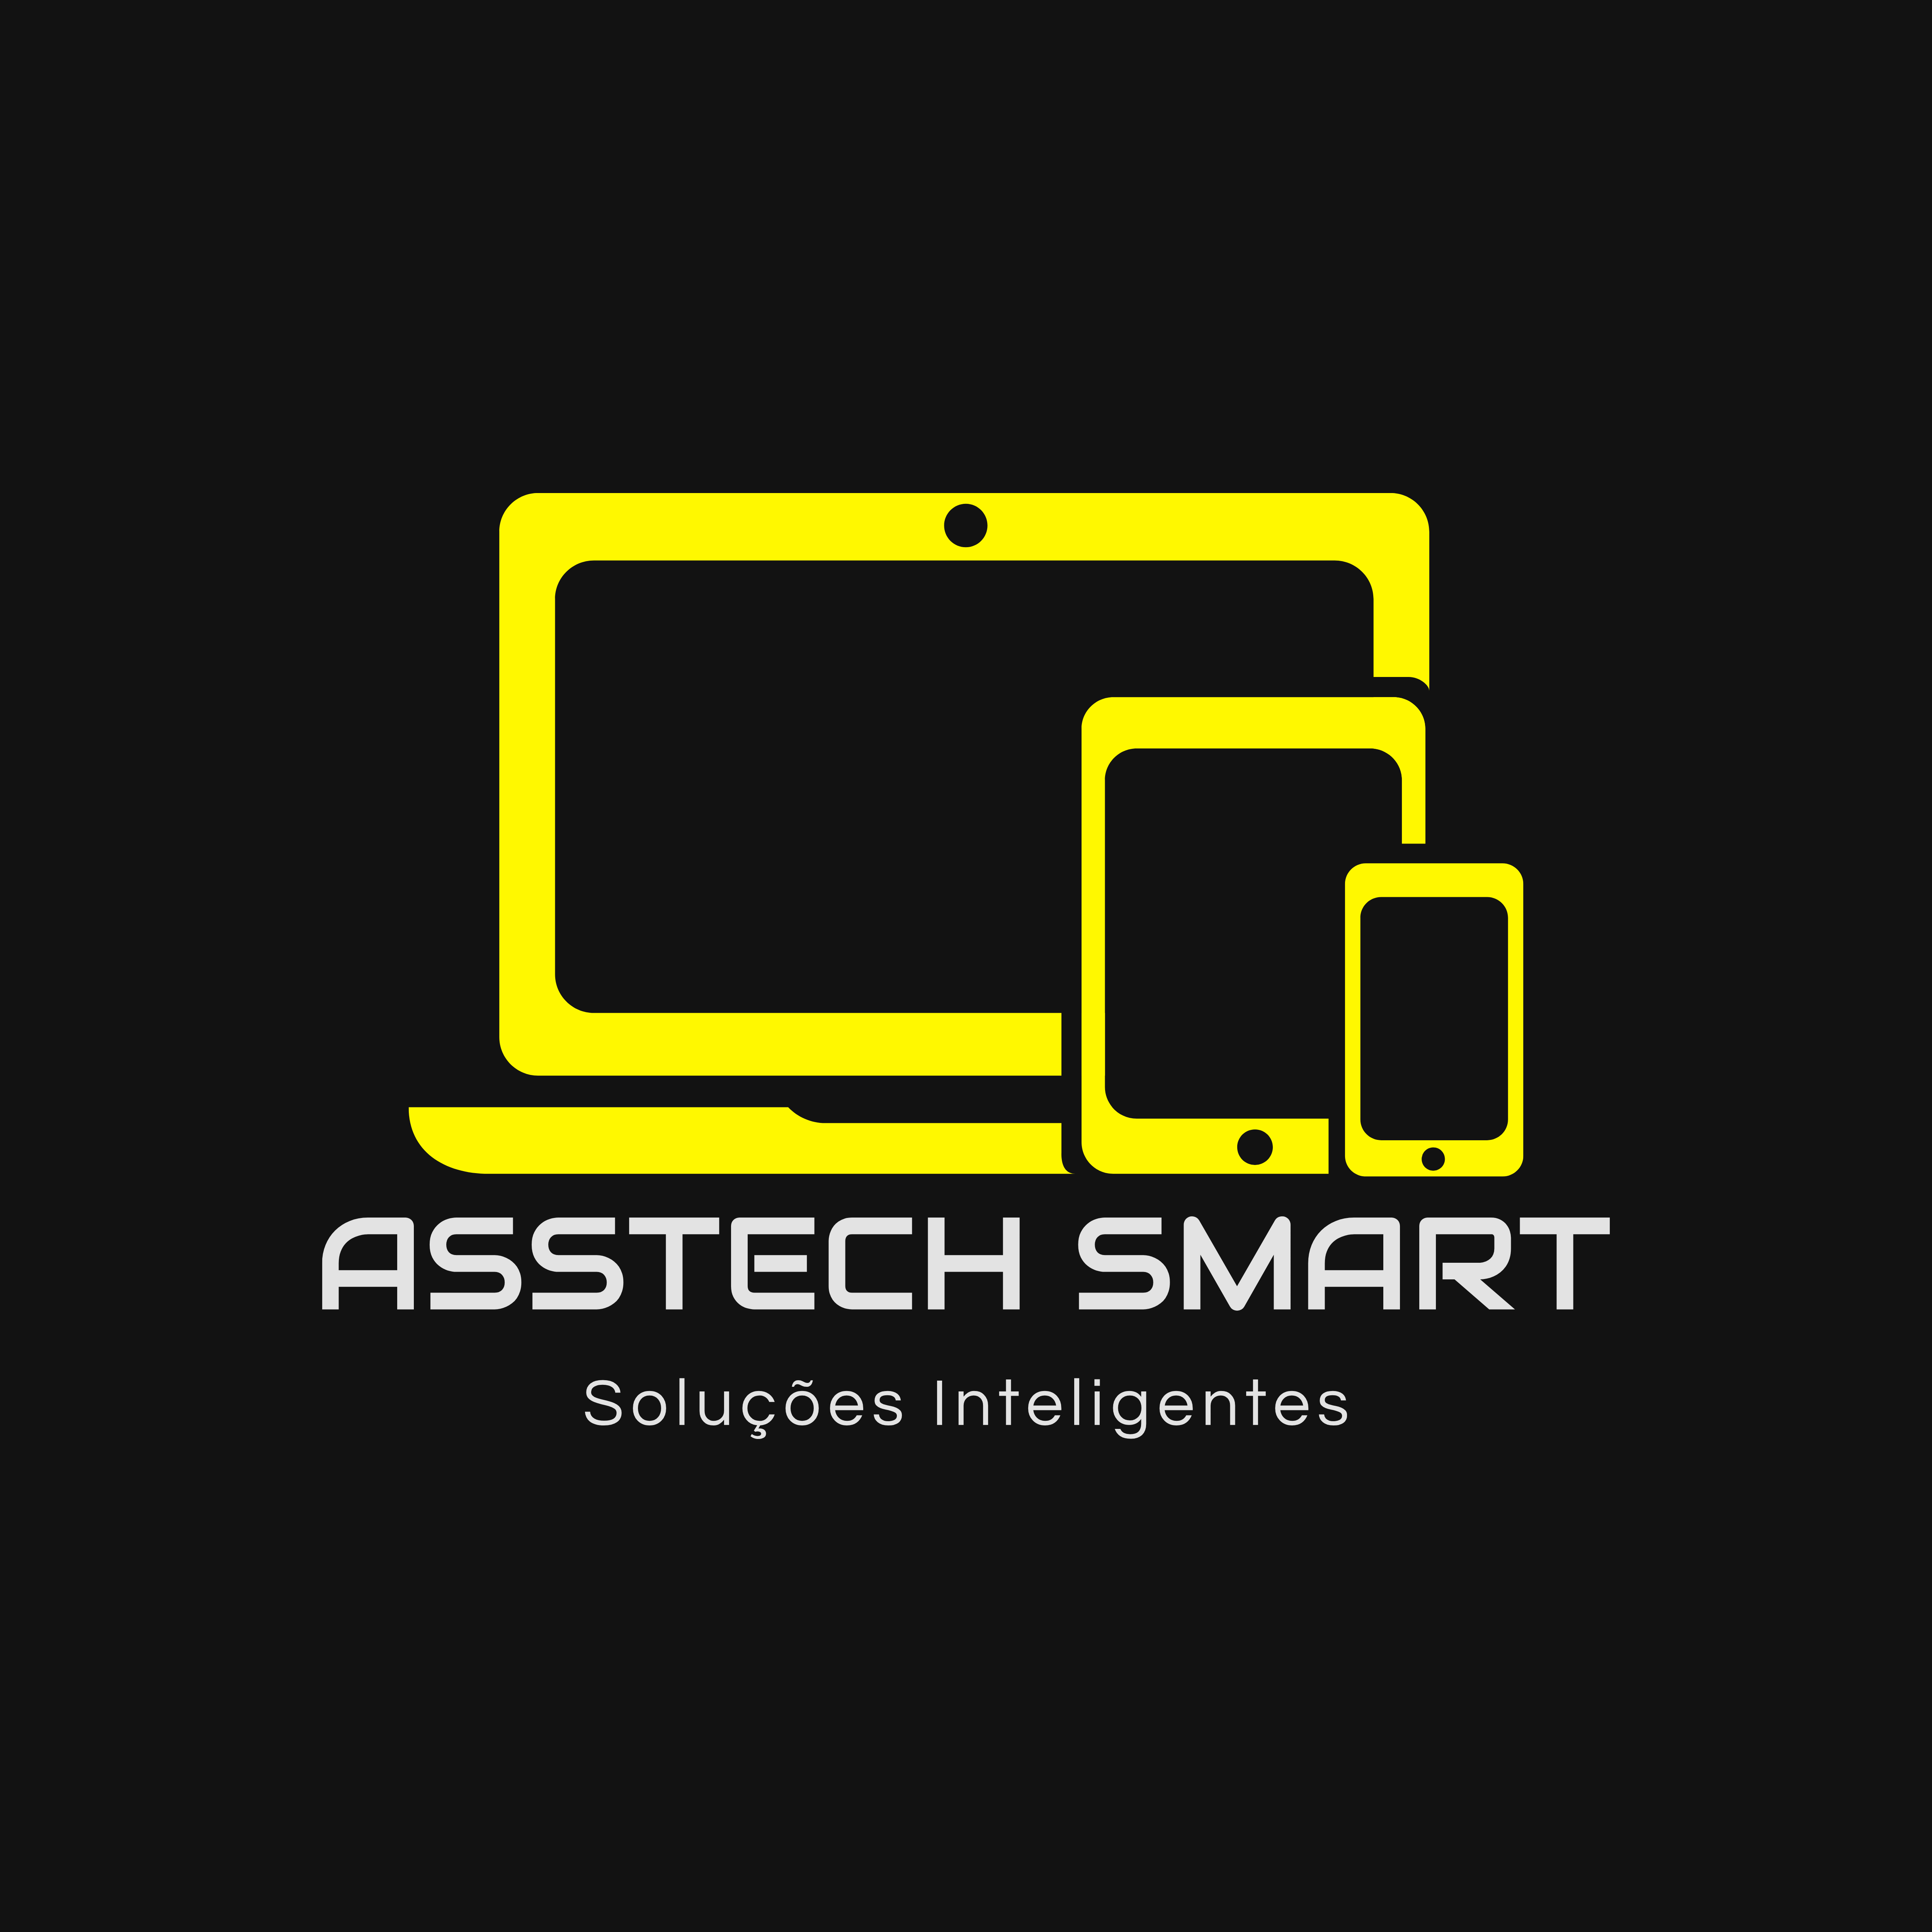 Asstech Smart